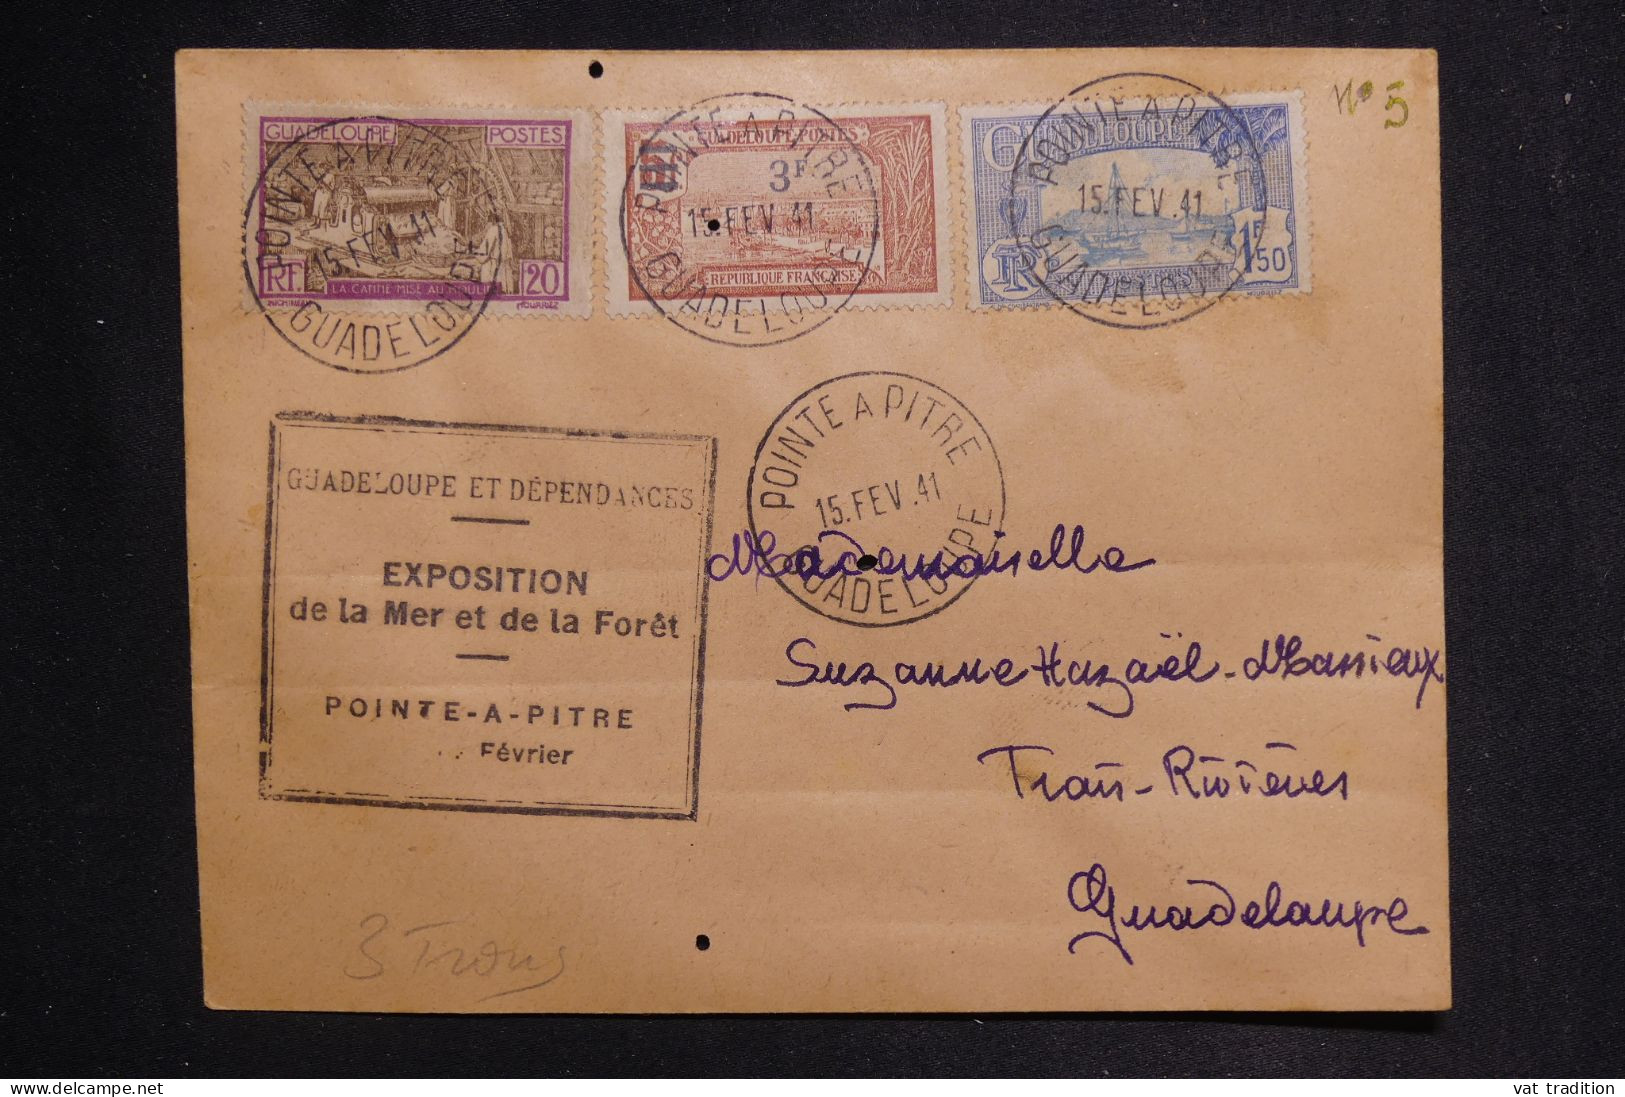 GUADELOUPE - Enveloppe De Pointe à Pitre En 1941 Avec Cachet Exposition De La Mer Et Forêt - L 150053 - Storia Postale